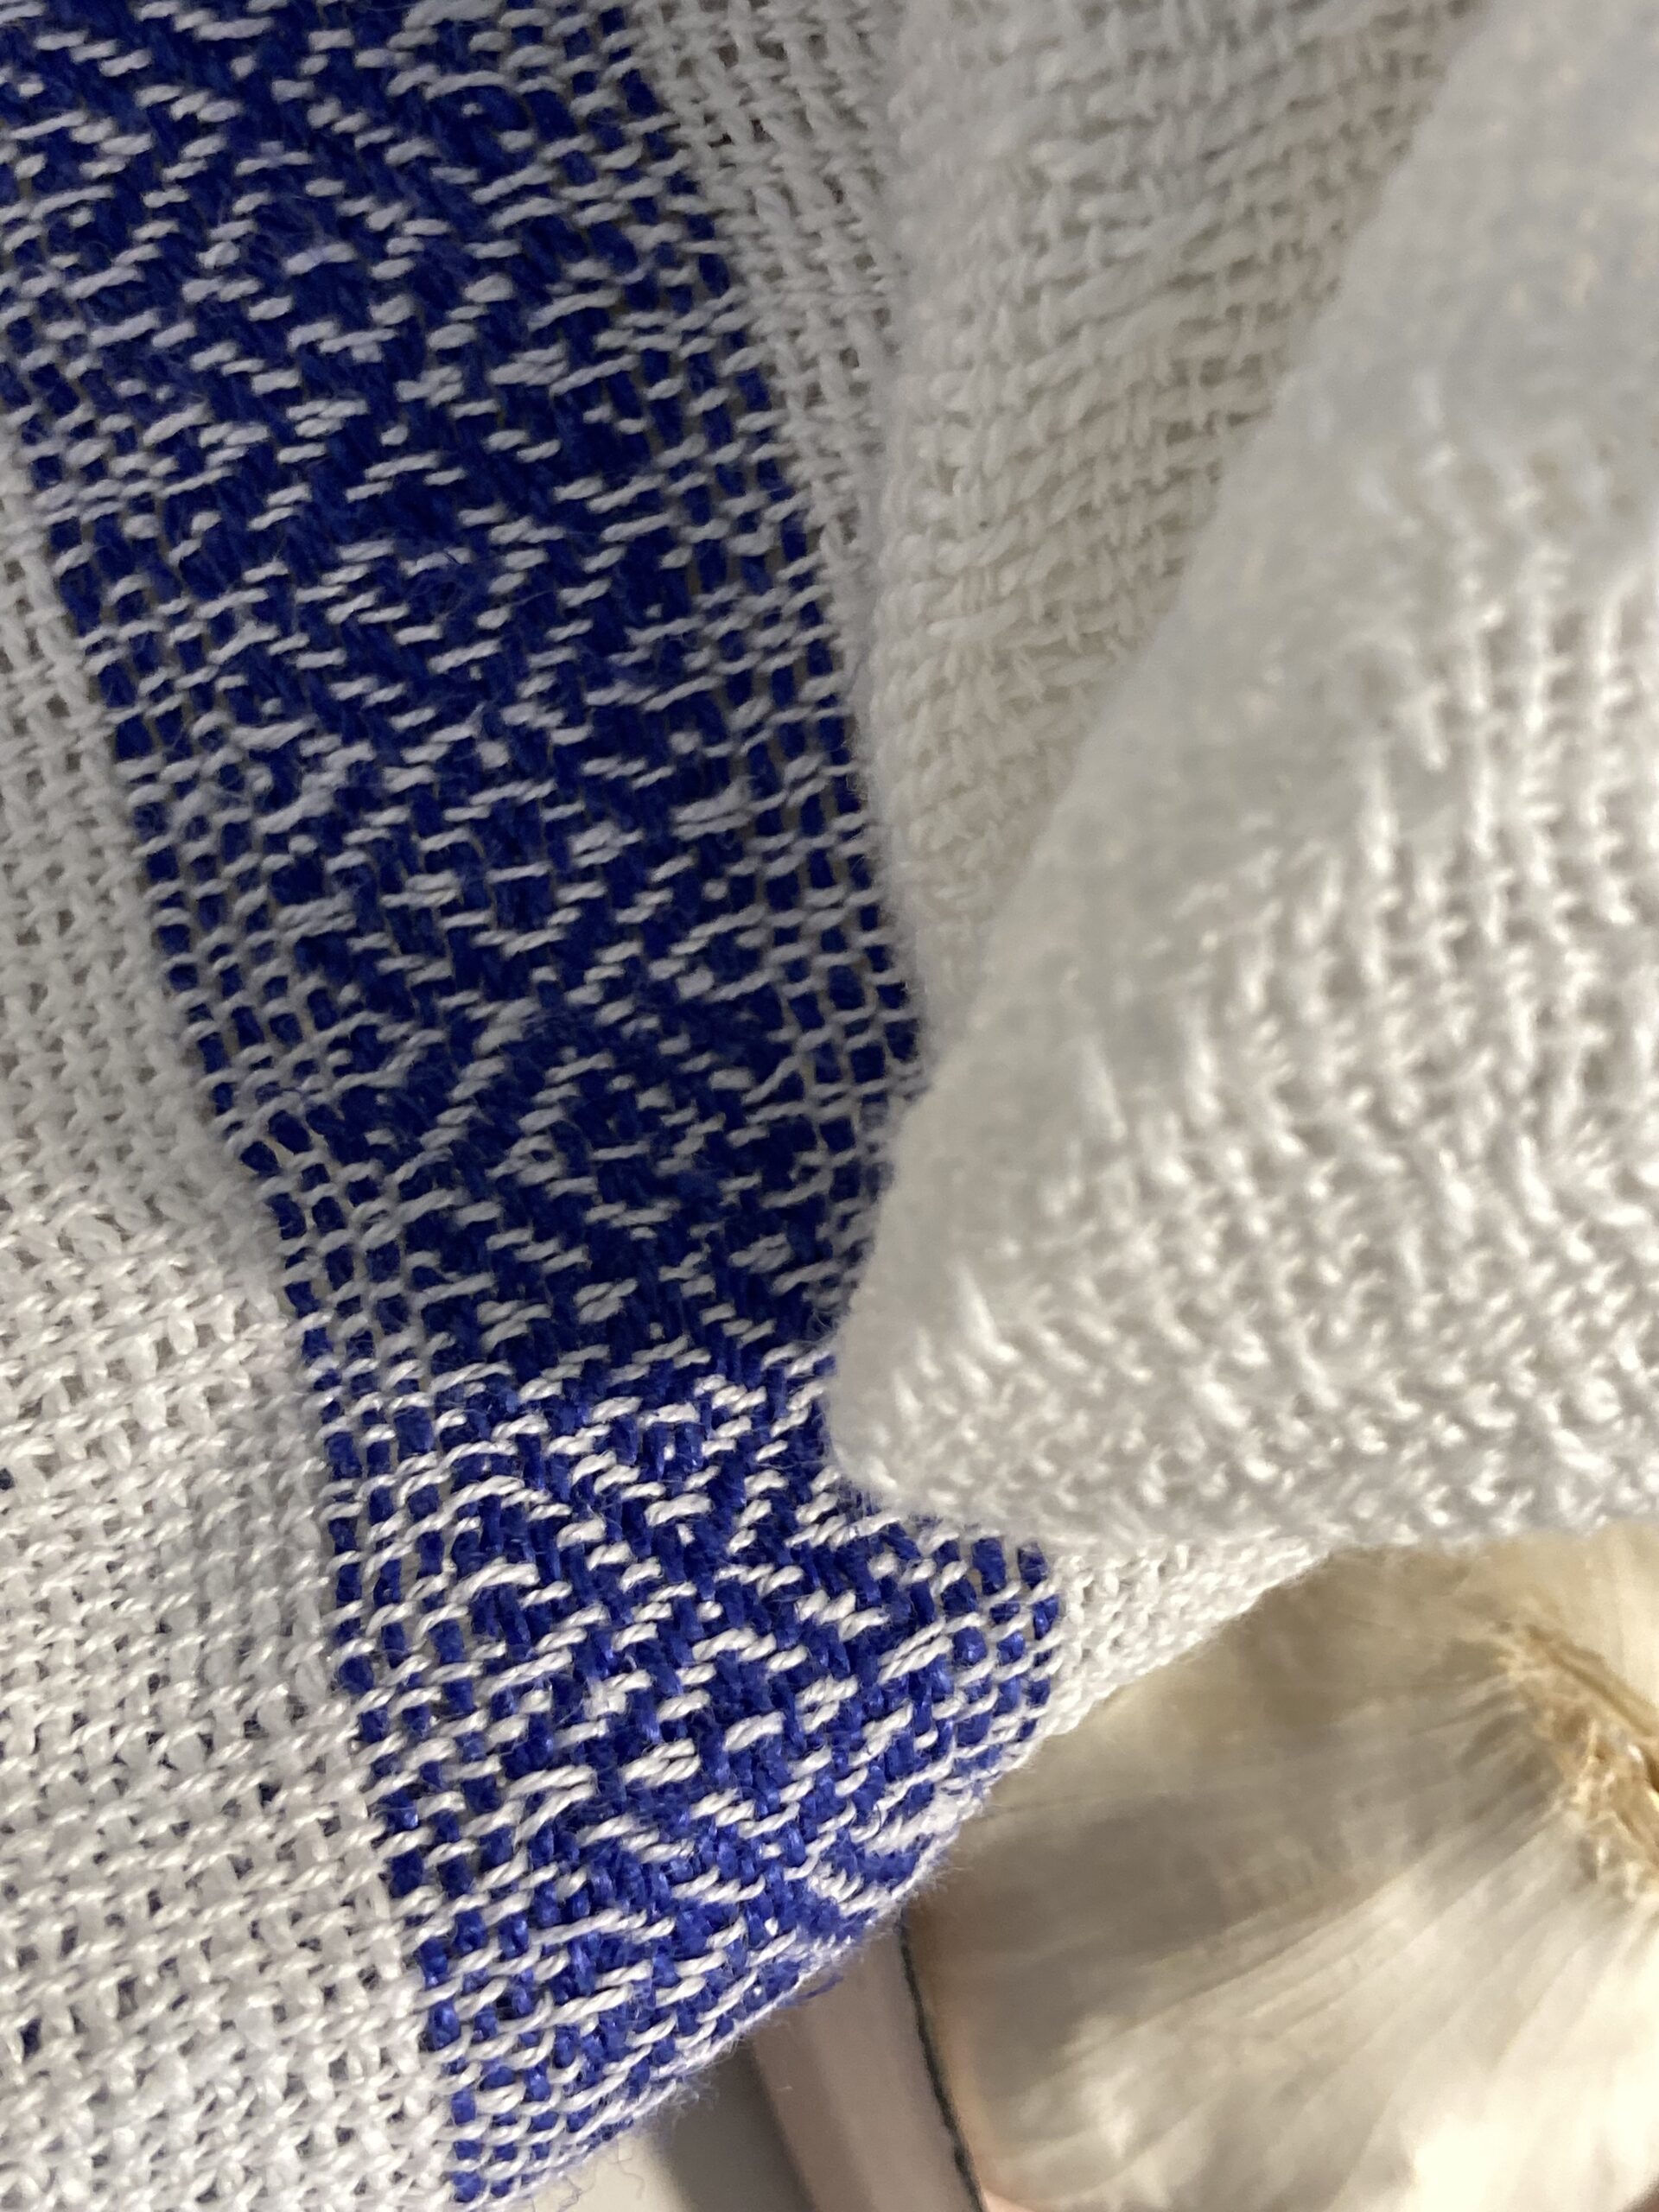 Glastuch Küchentuch klassisch schlicht weiss blau 100% Leinen Touché Handgewebtes Lena Holz